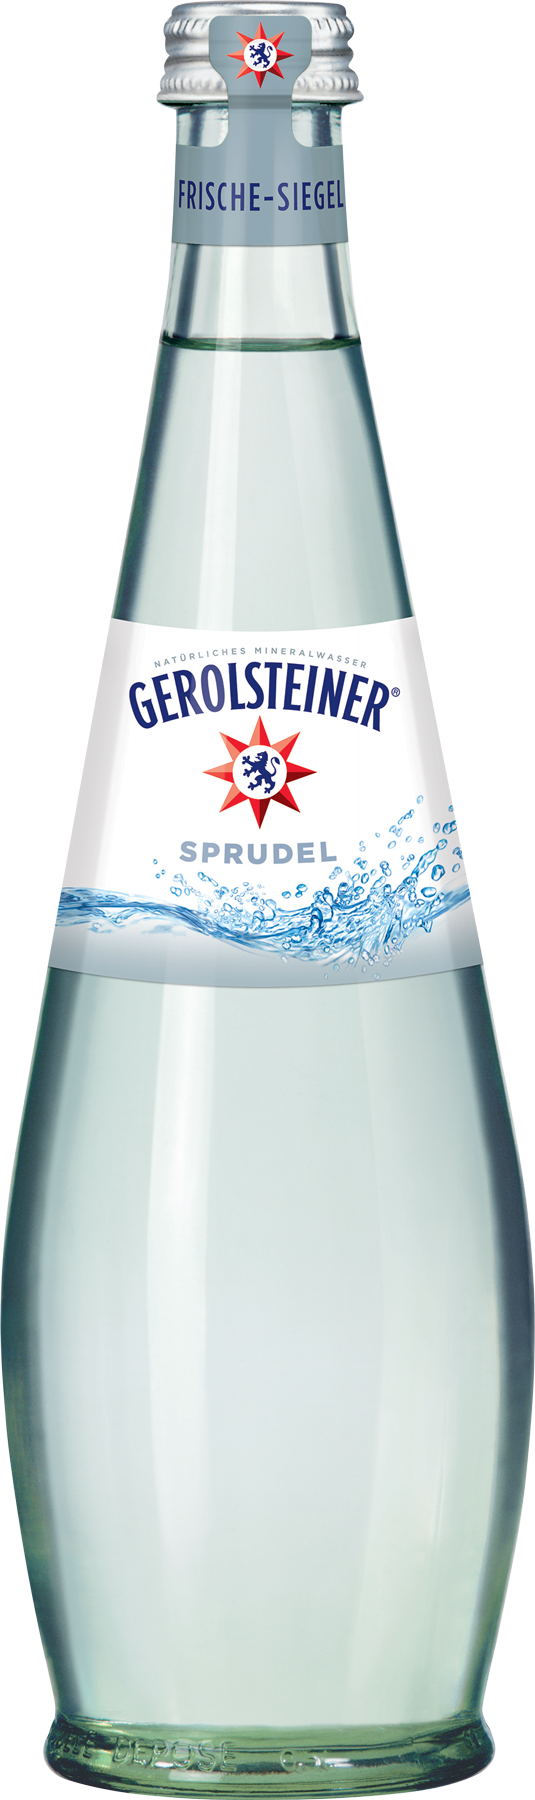 Gerolsteiner Mineralwasser Sprudel Gastro Kasten 15 x 0,5 l Glas Mehrweg